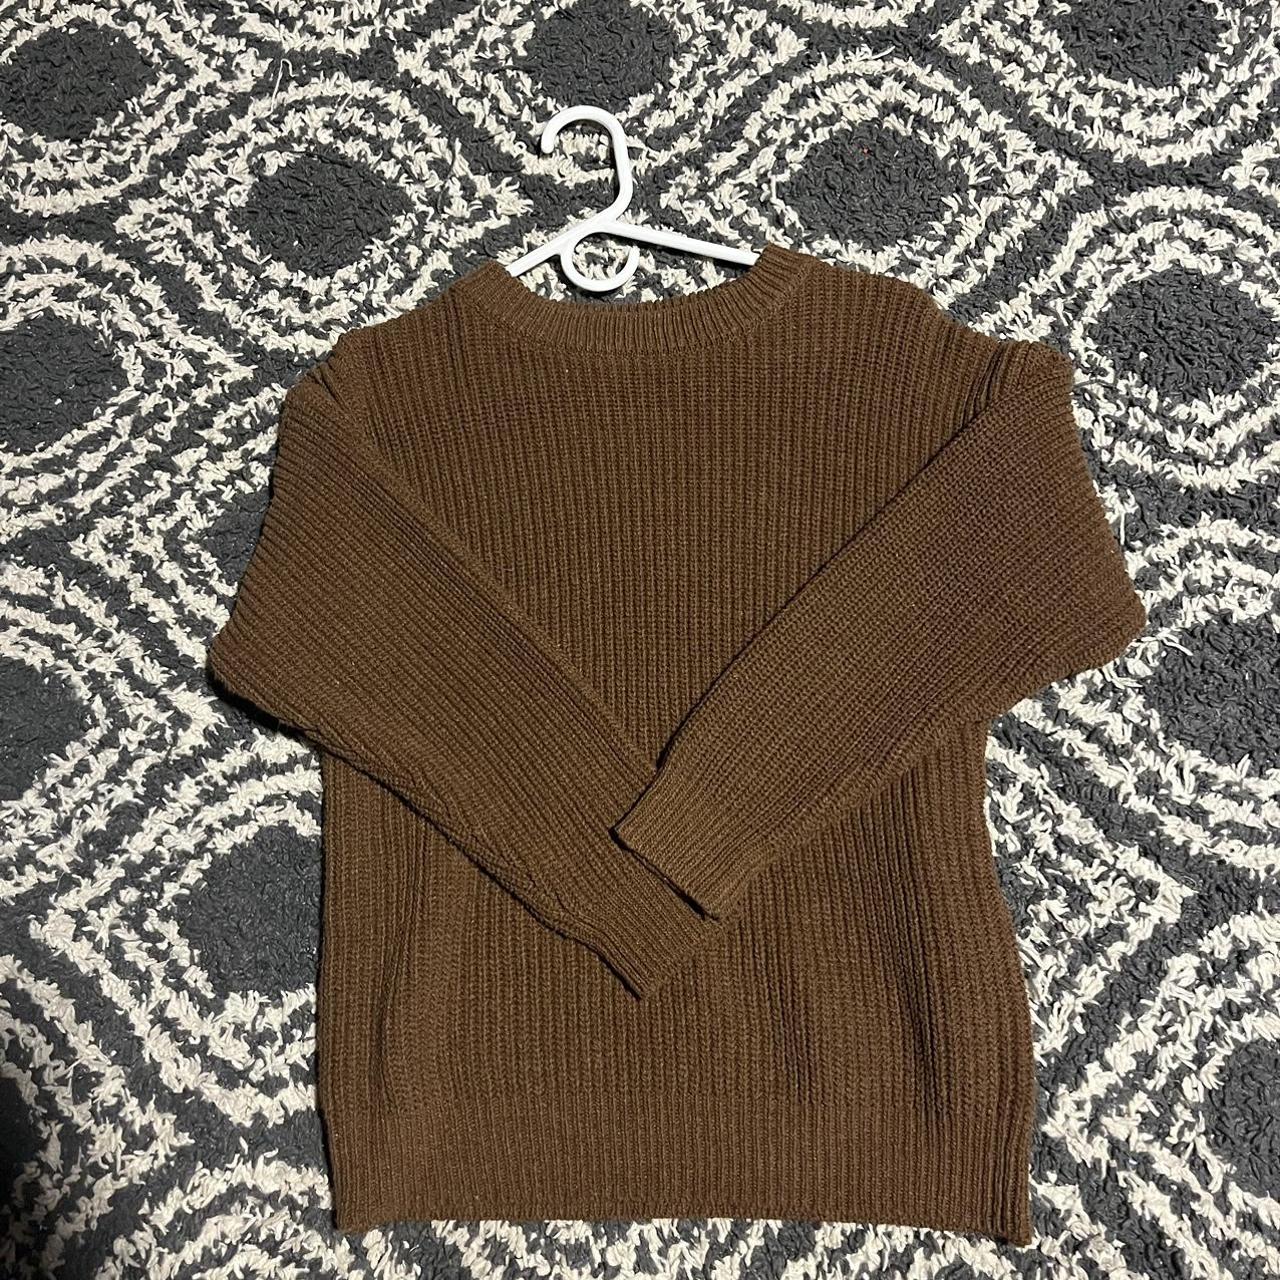 never been worn brown sweater - Depop